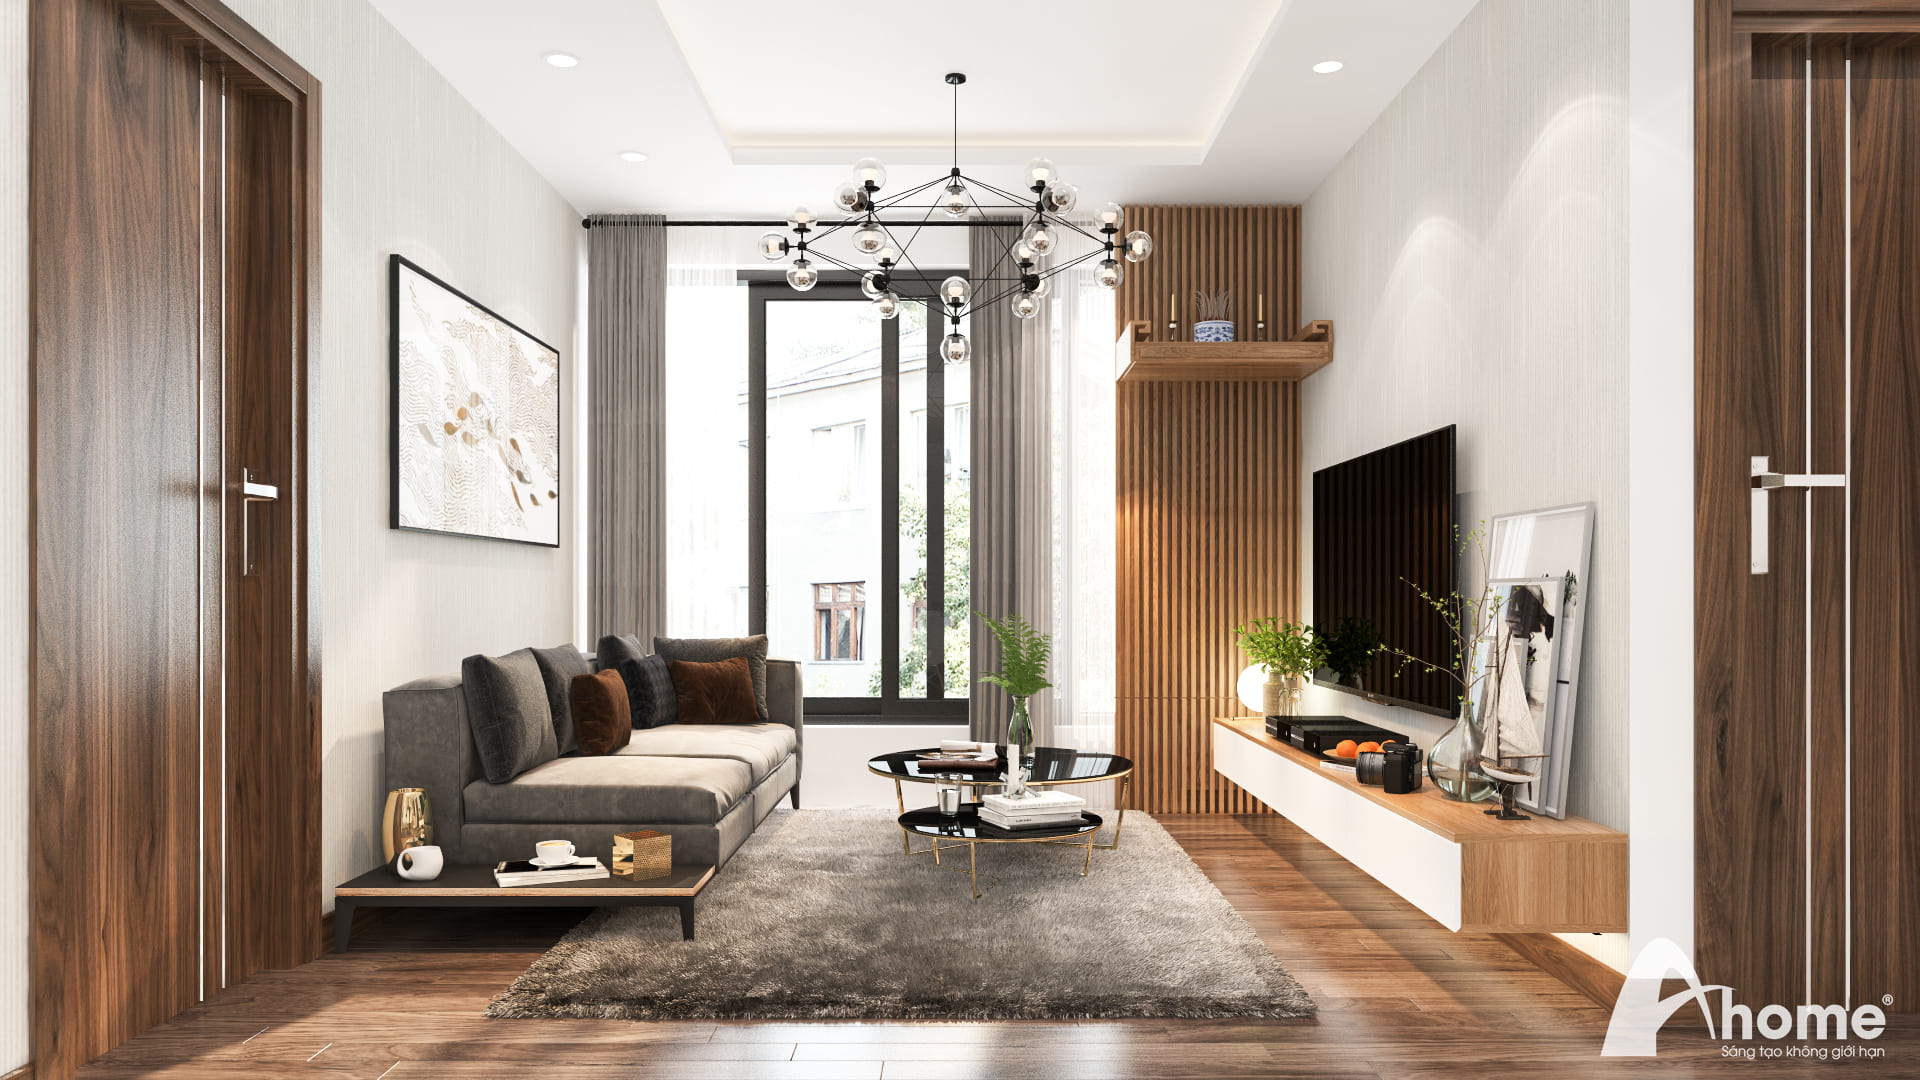 Thiết kế nội thất chung cư An Bình City mang hơi thở mới mẻ của năm 2024 với các phiên bản đẹp mắt, hiện đại và độc đáo. Với sự cân đối giữa màu sắc và kiến trúc, căn hộ mang lại không gian sống đầy tiện nghi và tinh tế. Hãy xem hình ảnh để khám phá vẻ đẹp của căn hộ đến từ thiết kế nội thất này.